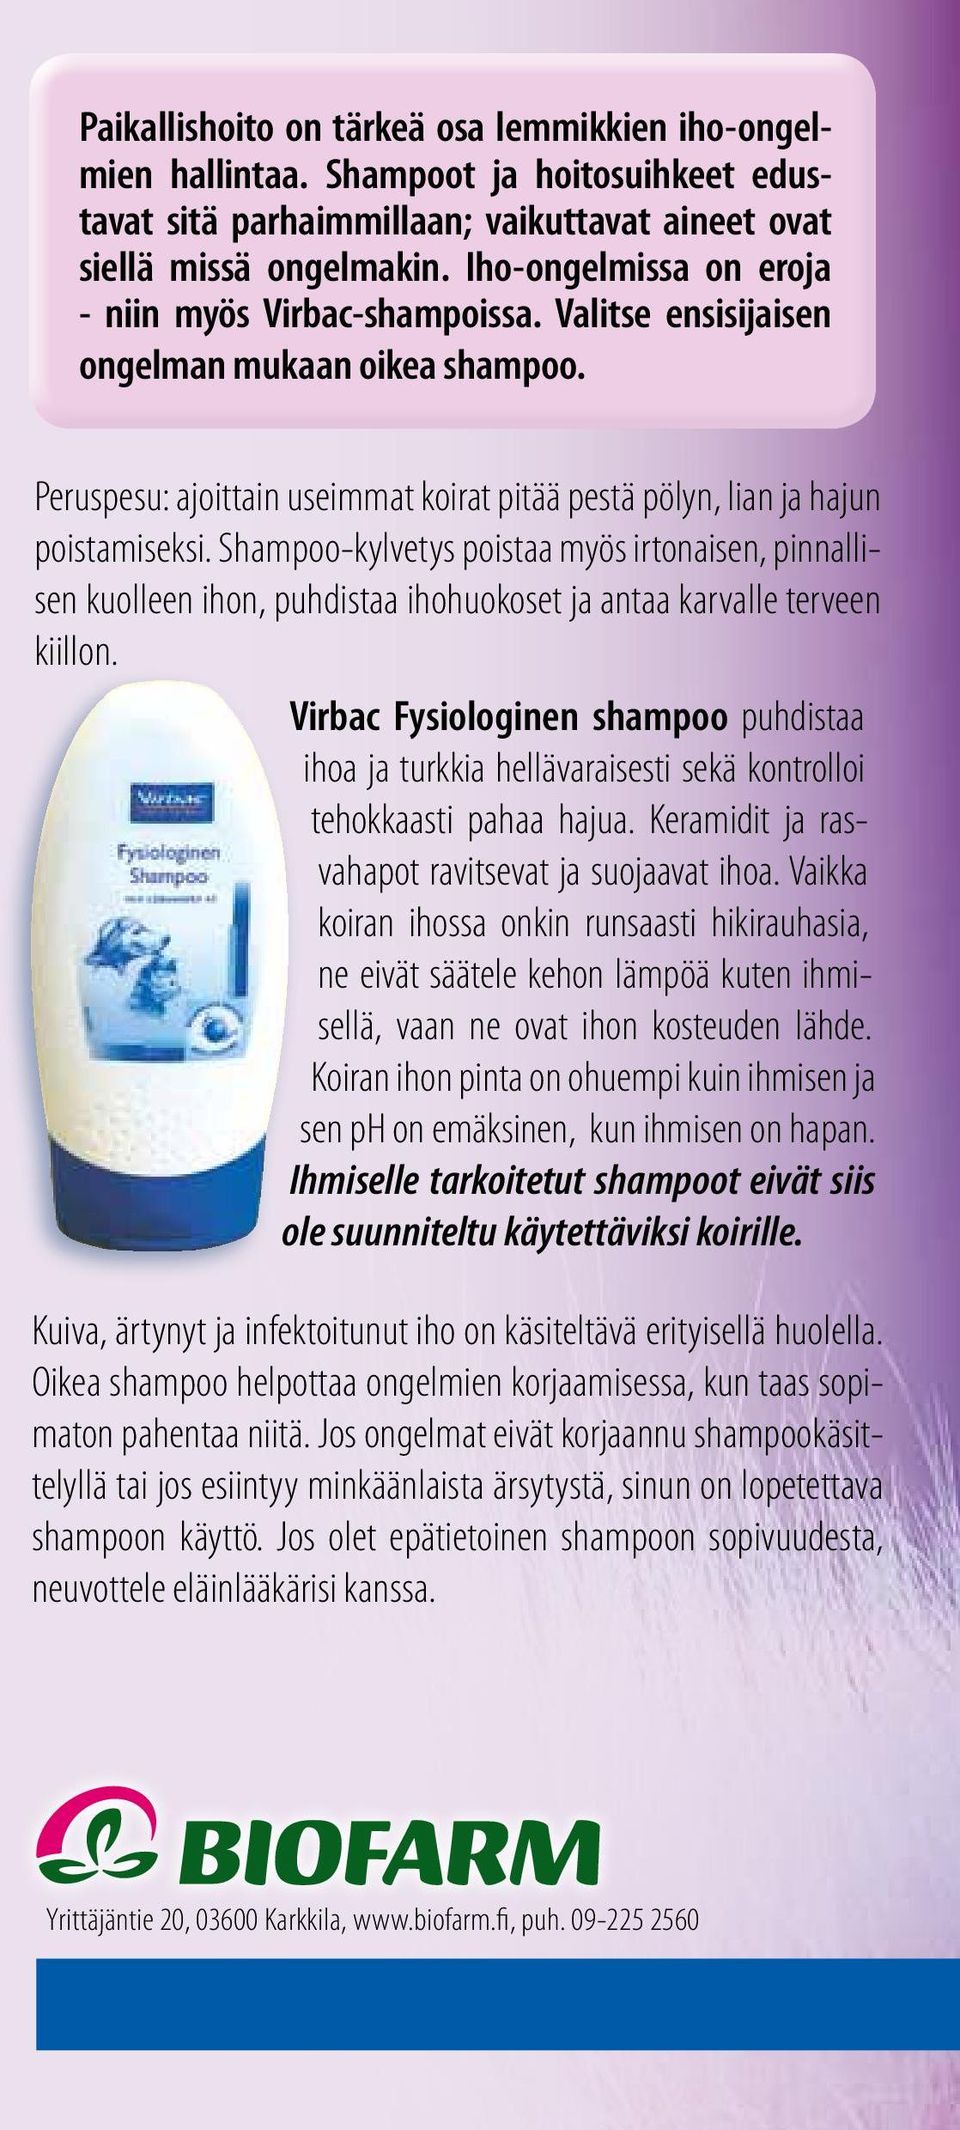 Shampoo-kylvetys poistaa myös irtonaisen, pinnallisen kuolleen ihon, puhdistaa ihohuokoset ja antaa karvalle terveen kiillon.